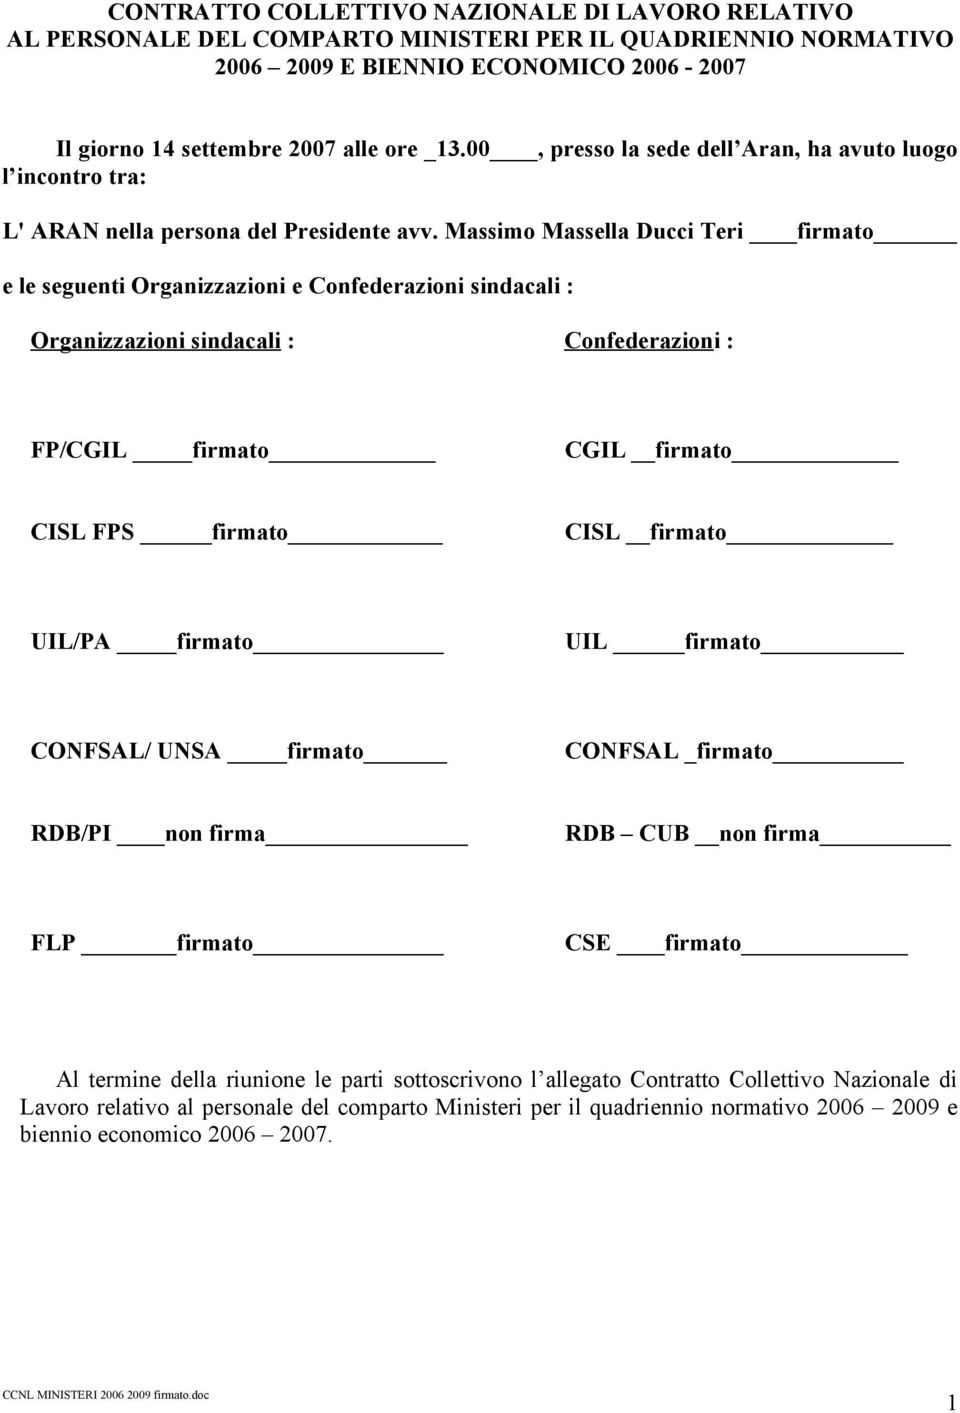 Massimo Massella Ducci Teri firmato e le seguenti Organizzazioni e Confederazioni sindacali : Organizzazioni sindacali : Confederazioni : FP/CGIL firmato CGIL firmato CISL FPS firmato CISL firmato